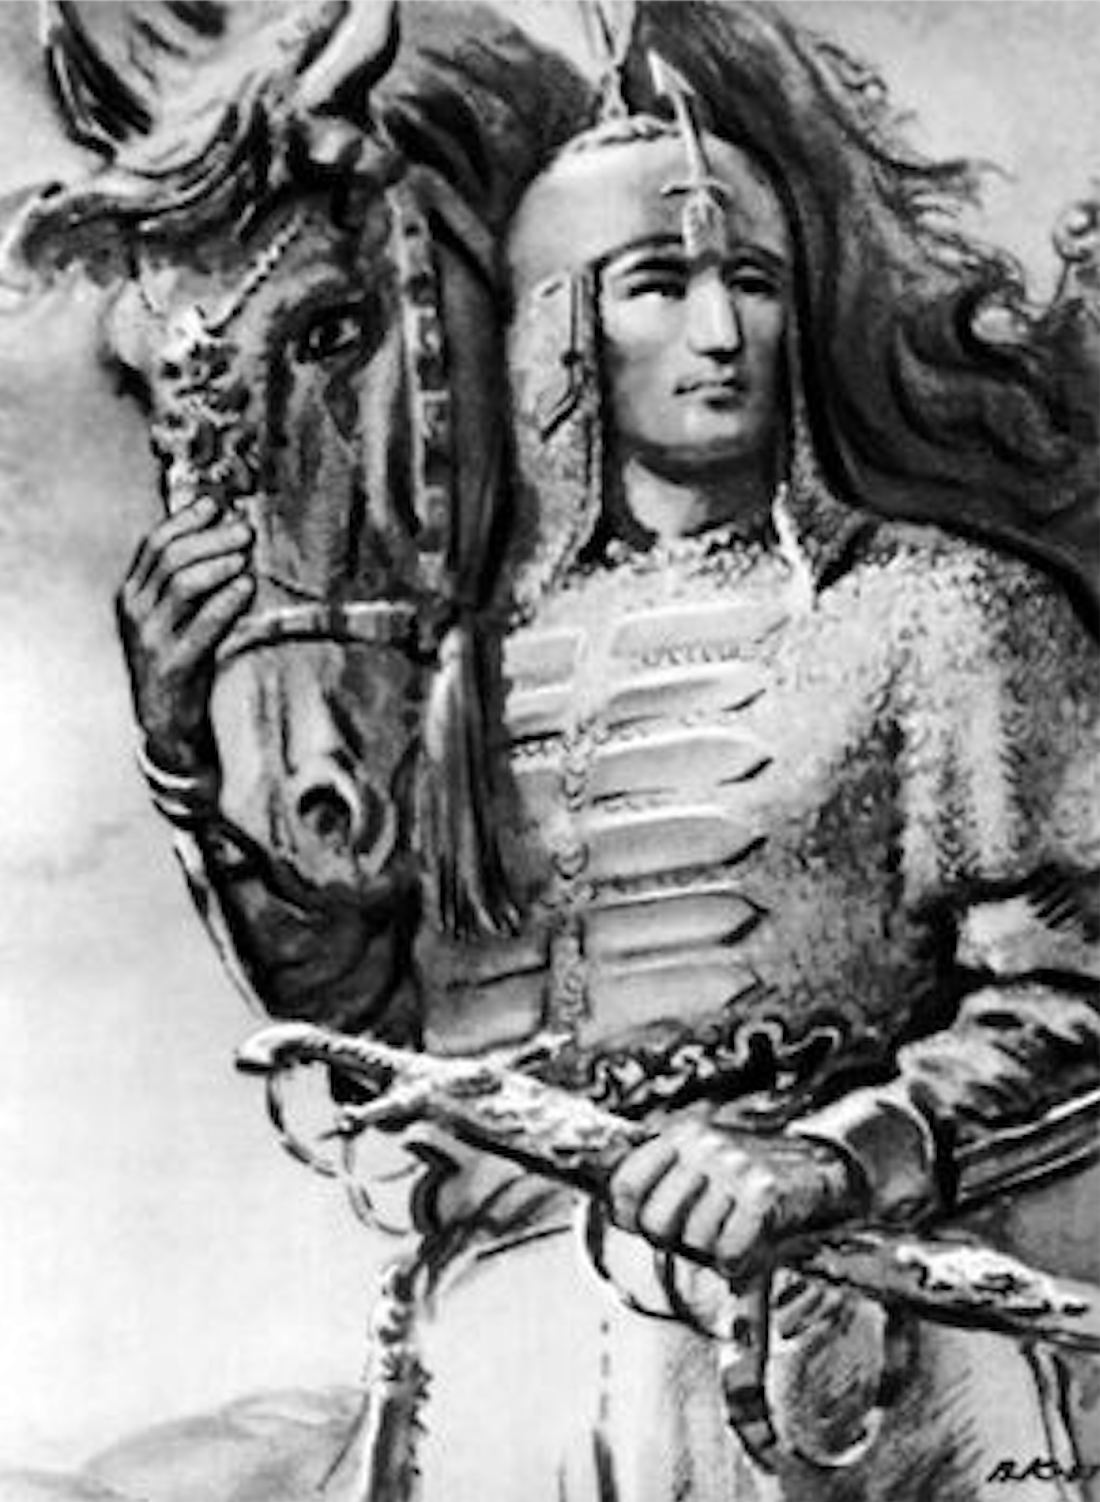 Герои татарских эпосов